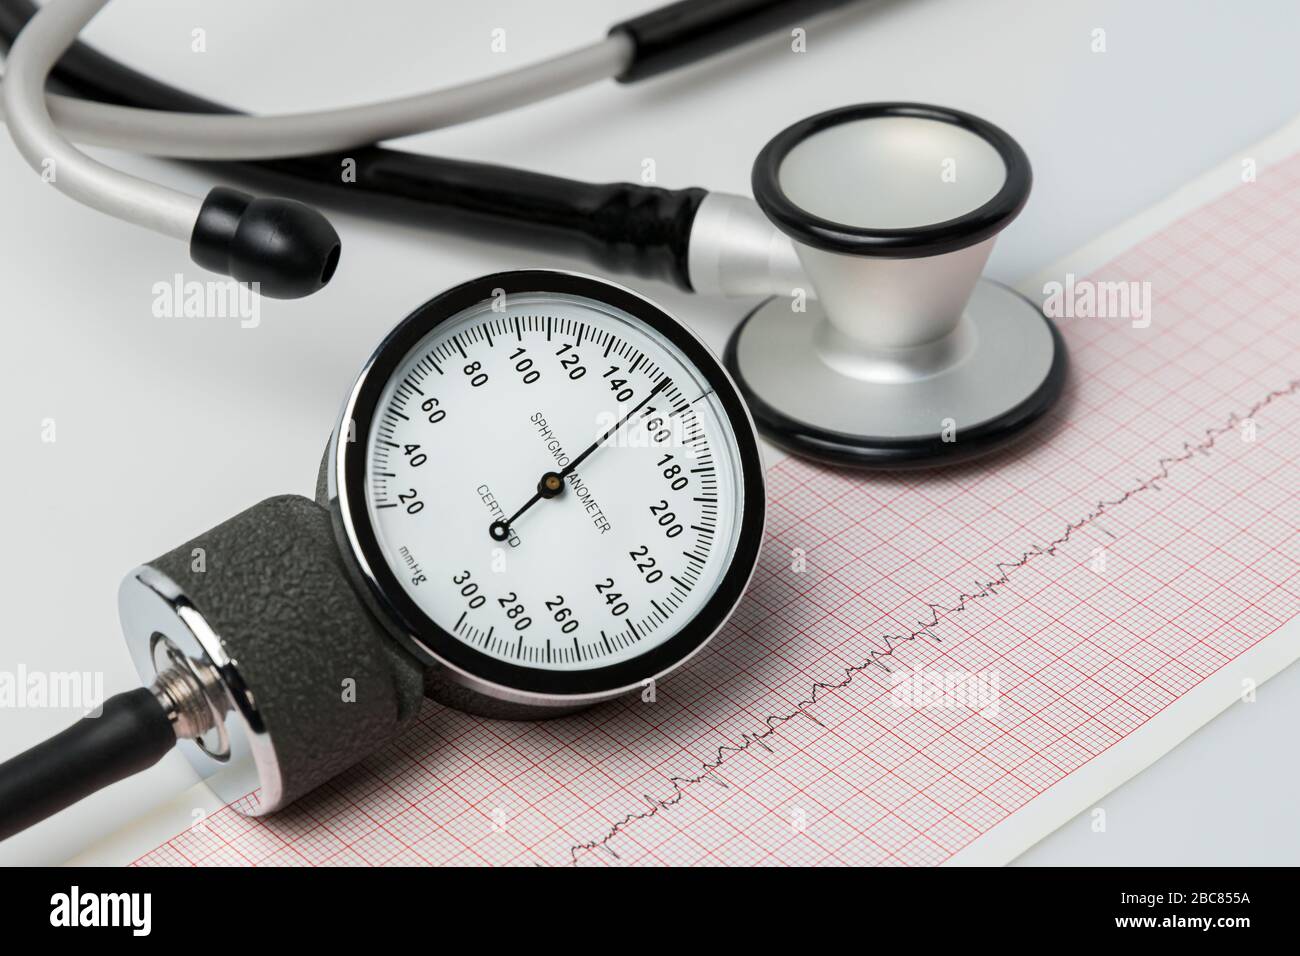 Closeup del misuratore della pressione sanguigna. Concetto di salute cardiaca, ipertensione, malattie cardiovascolari Foto Stock